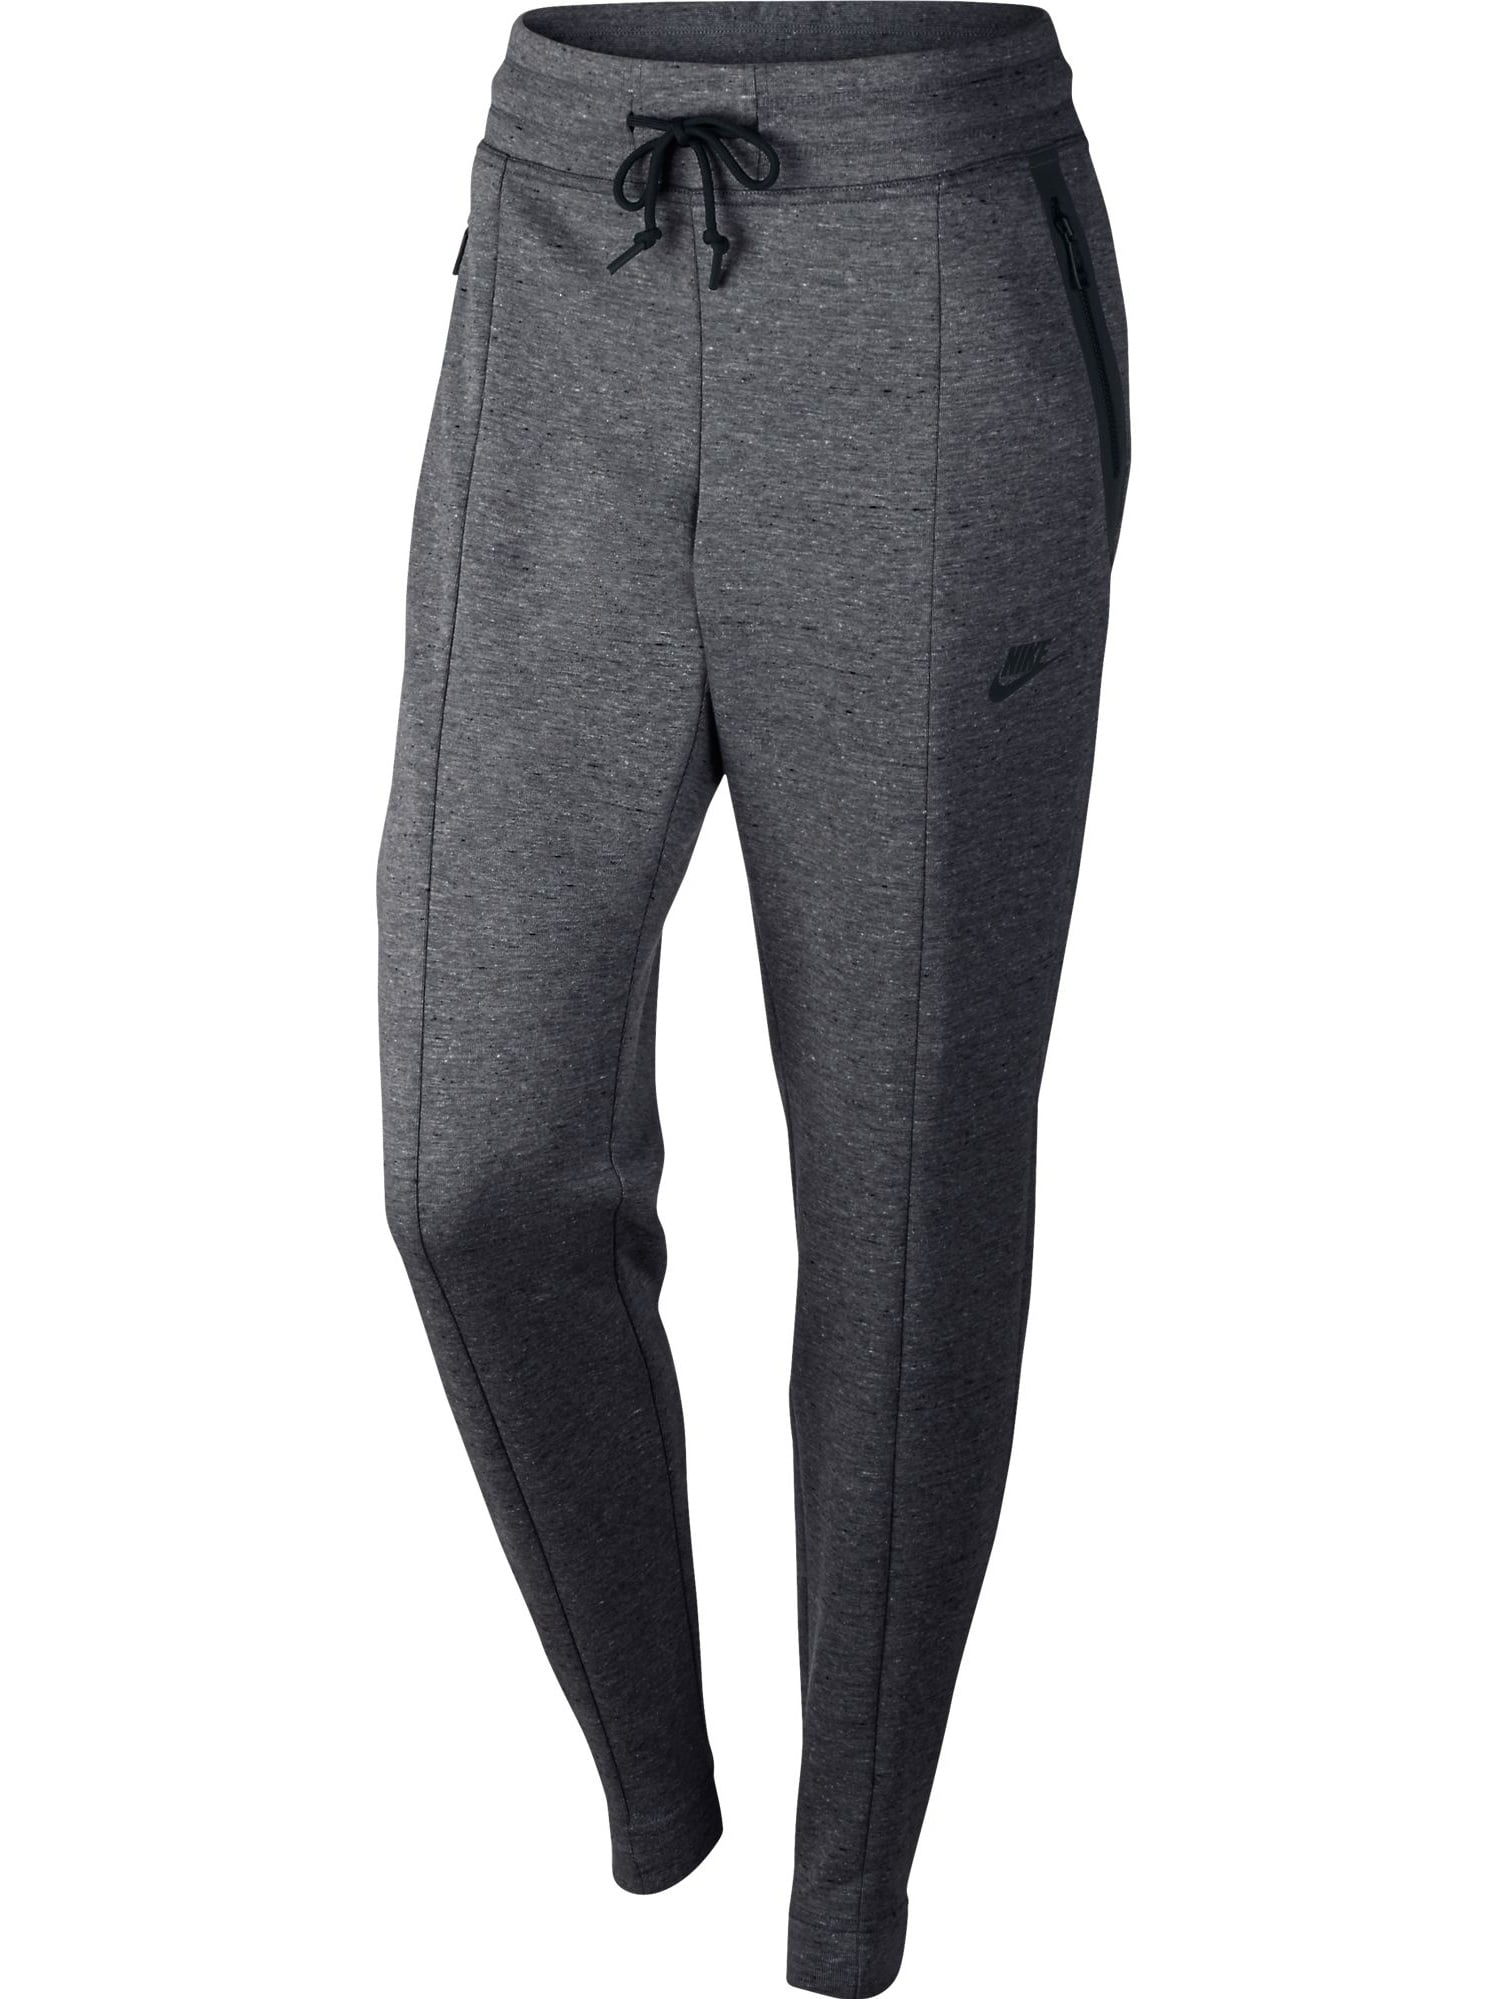 Nike Sportswear Tech Fleece Joggers Womens L CW4292-010 Black Sweatpants  for sale online 